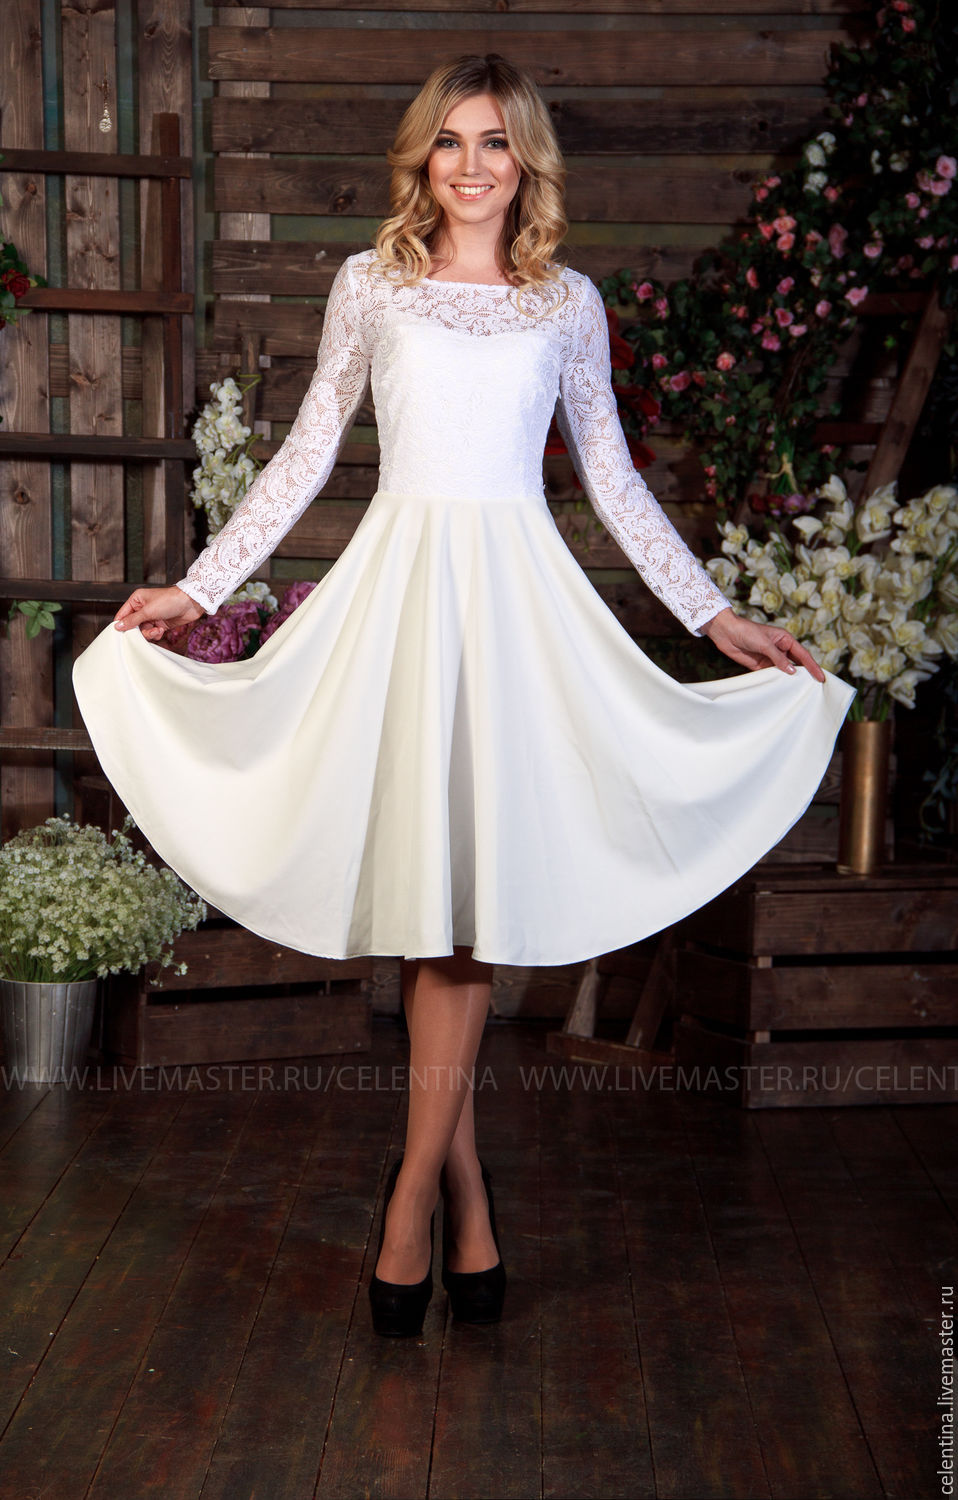 Купить белые женские платья в Украине